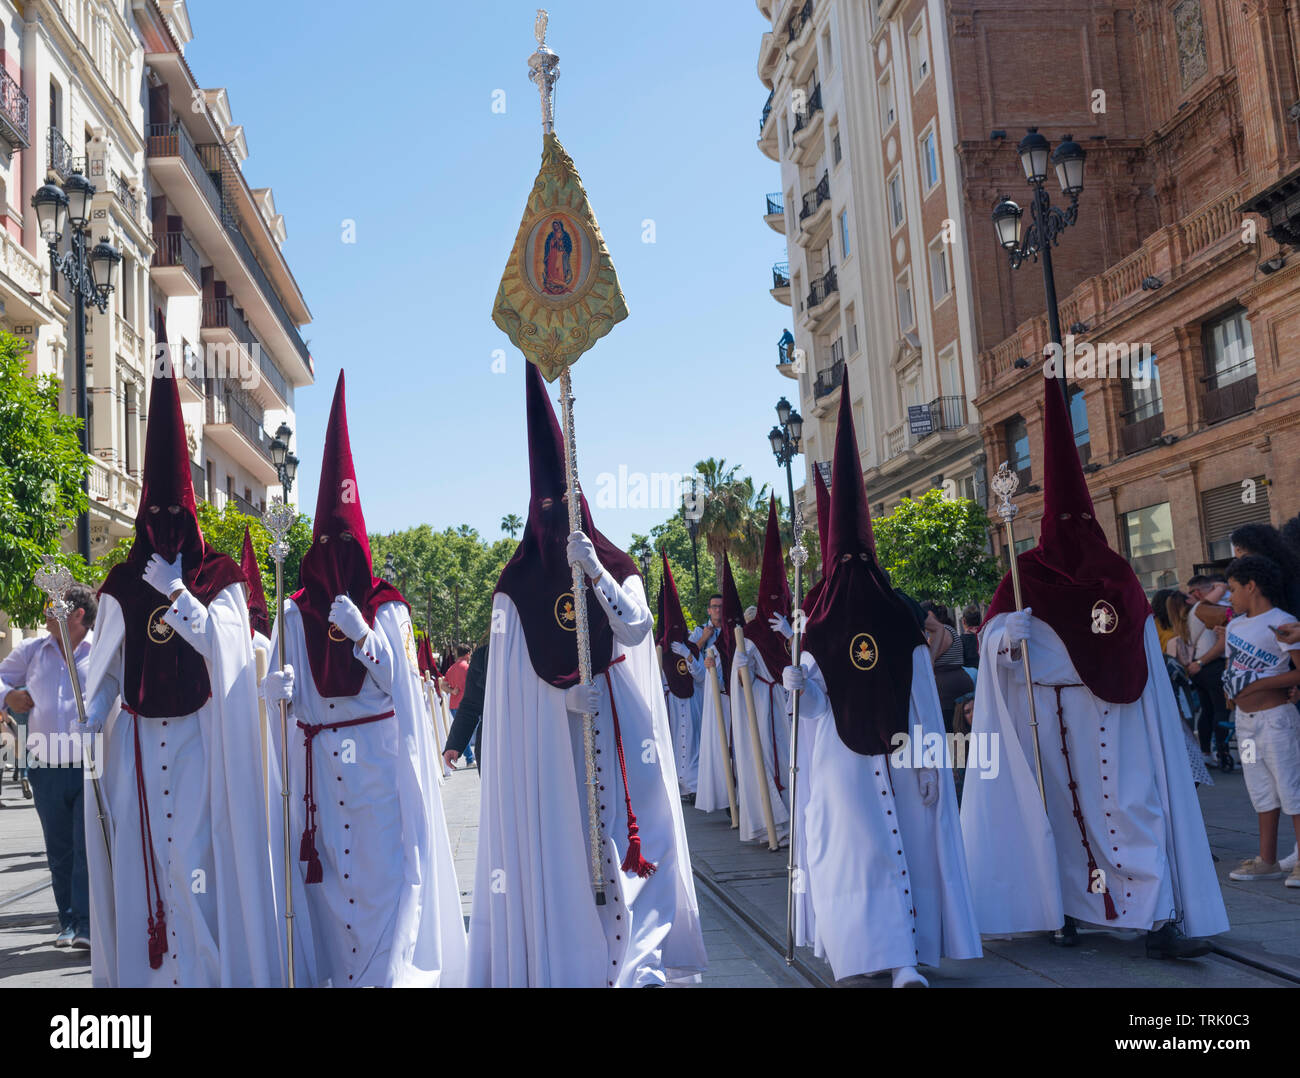 Desfile de la Semana Santa, Sevilla, España. La Semana Santa de Sevilla